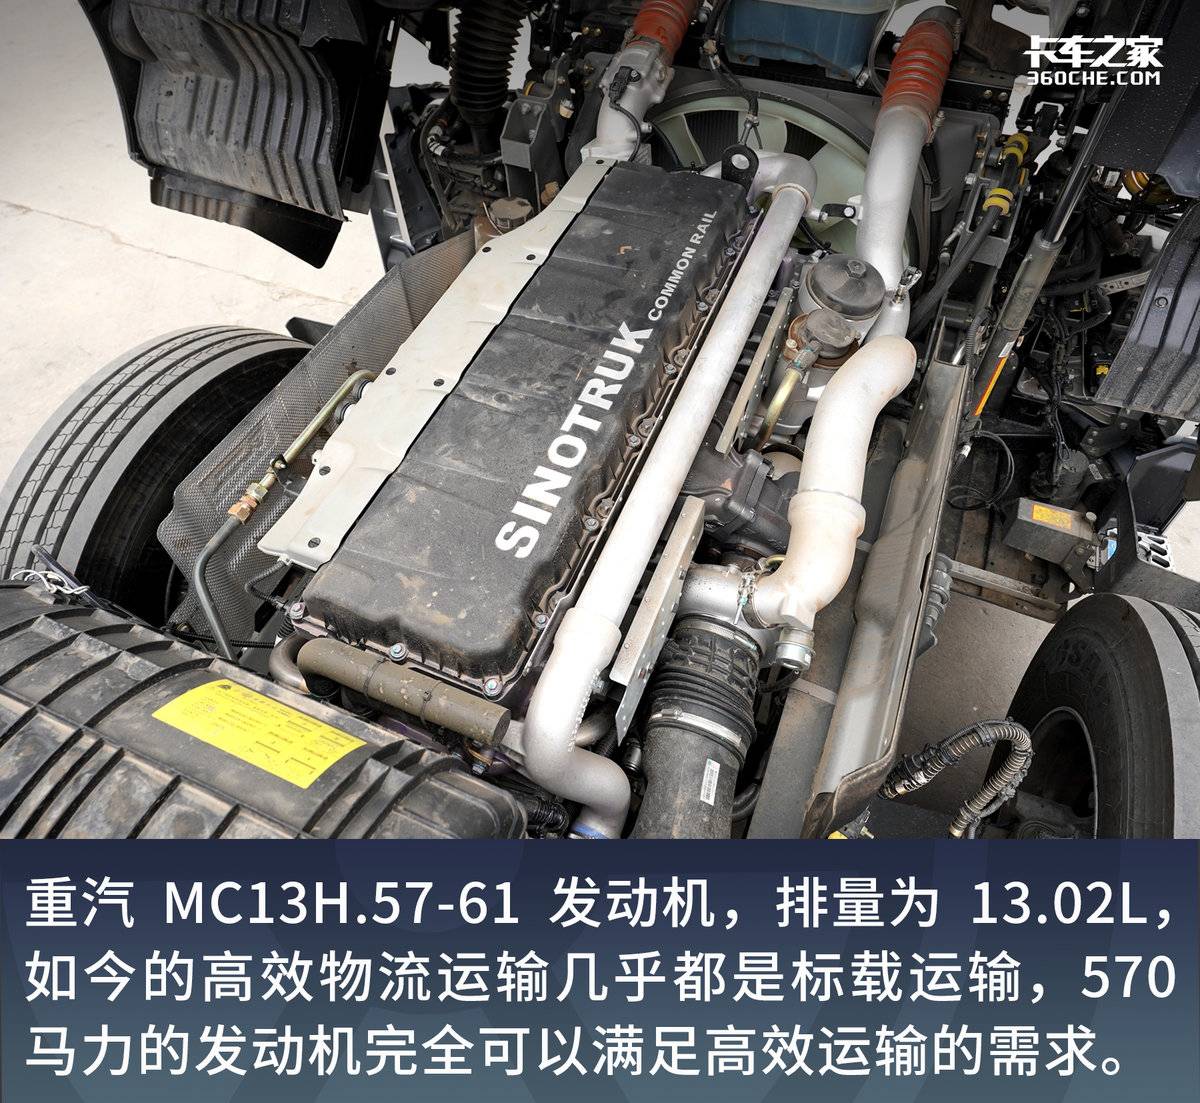 报价45.8万 黄河X7搭载570马力发动机 16挡AMT搭配气囊桥